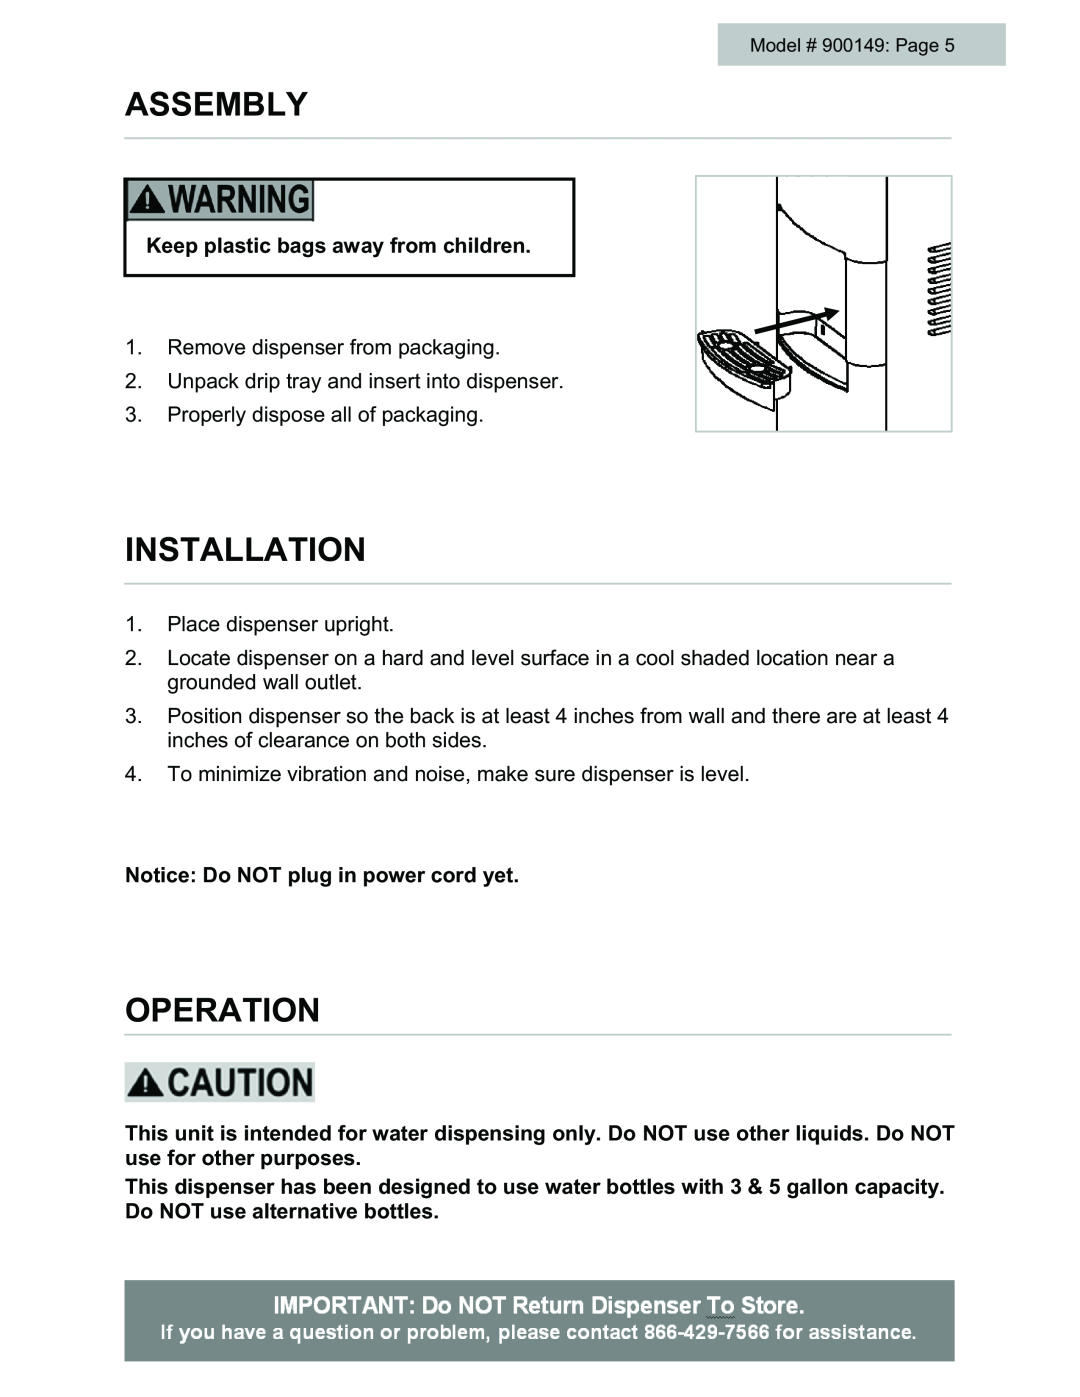 Black & Decker # 900149 user manual Assembly, Installation, Operation 